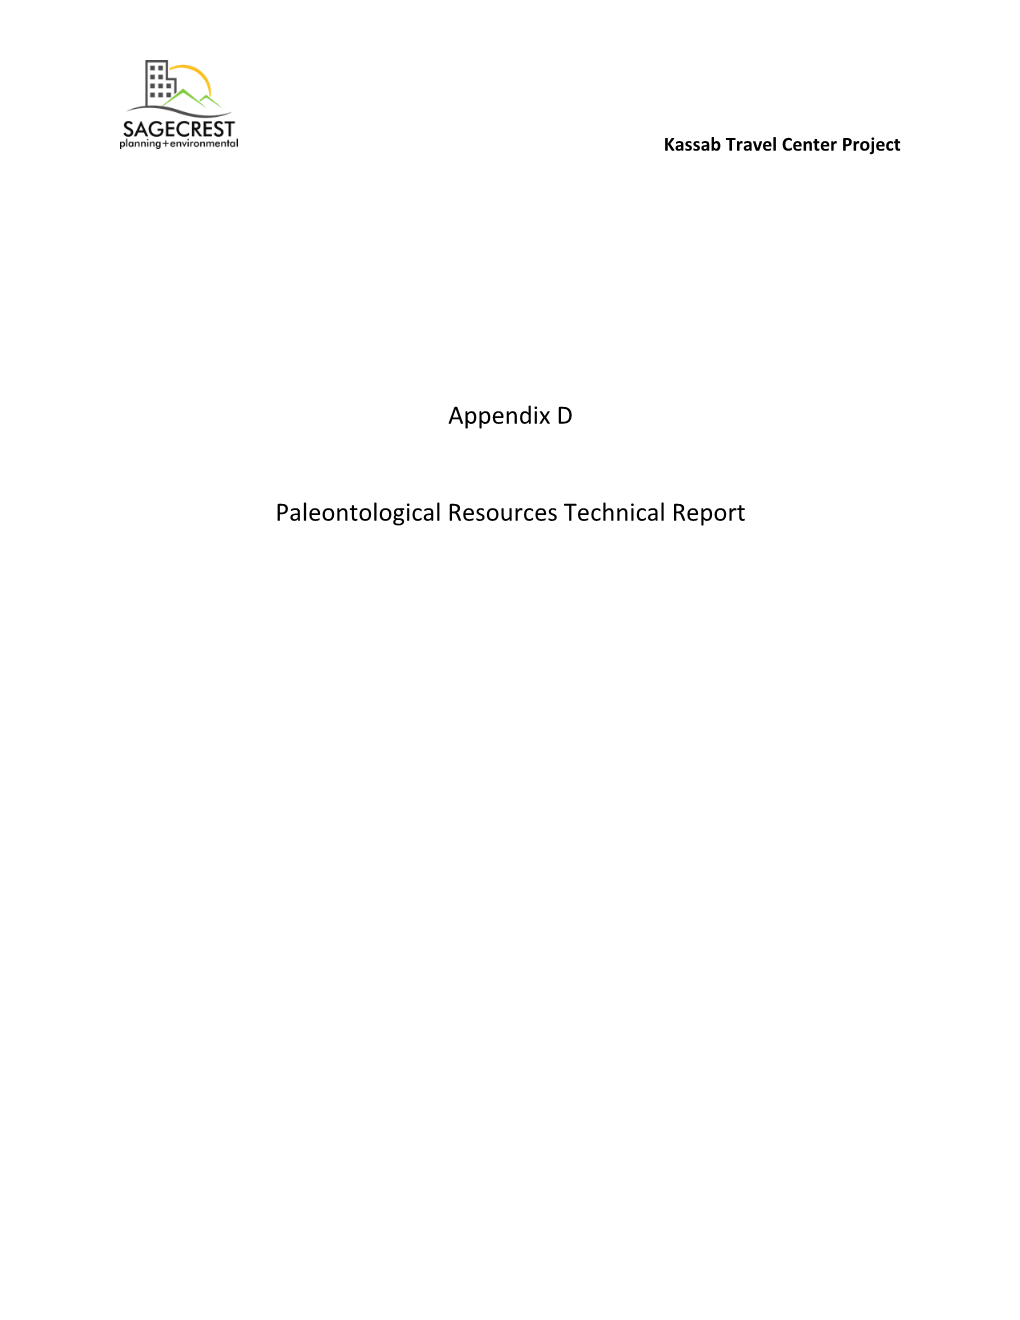 Appendix D Paleontological Resources Technical Report